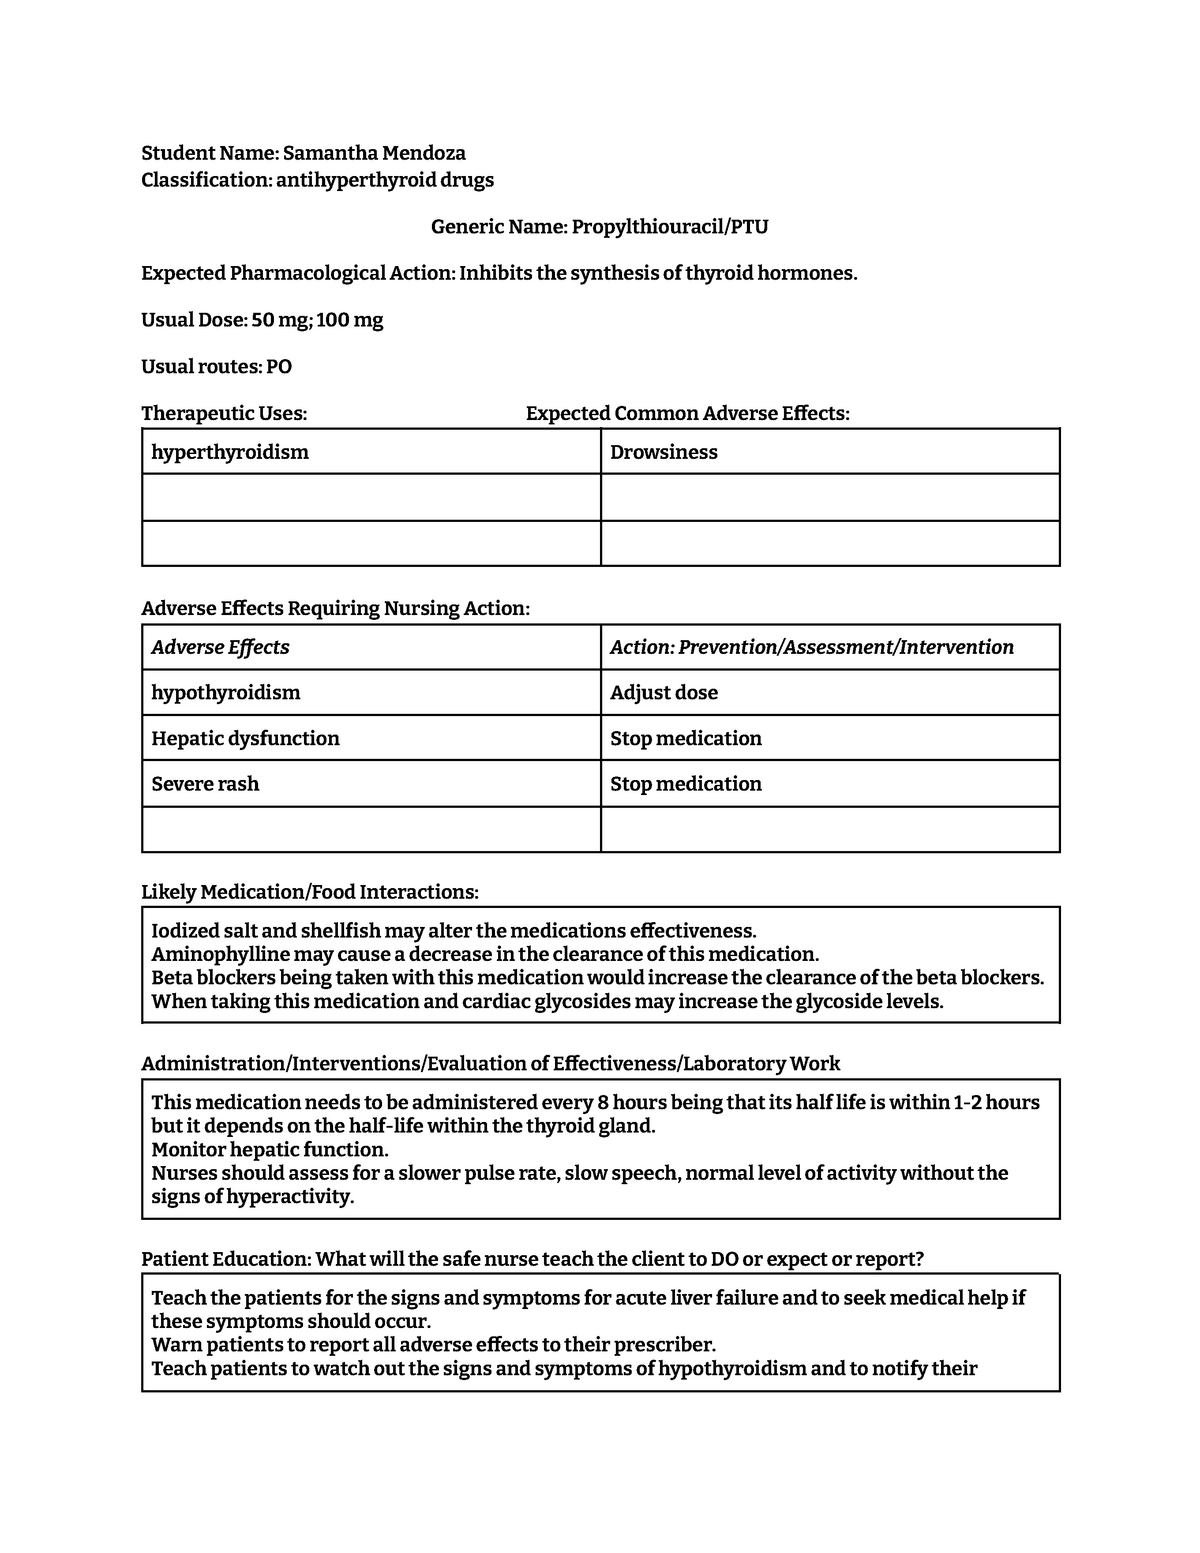 propylthiouracil medication template